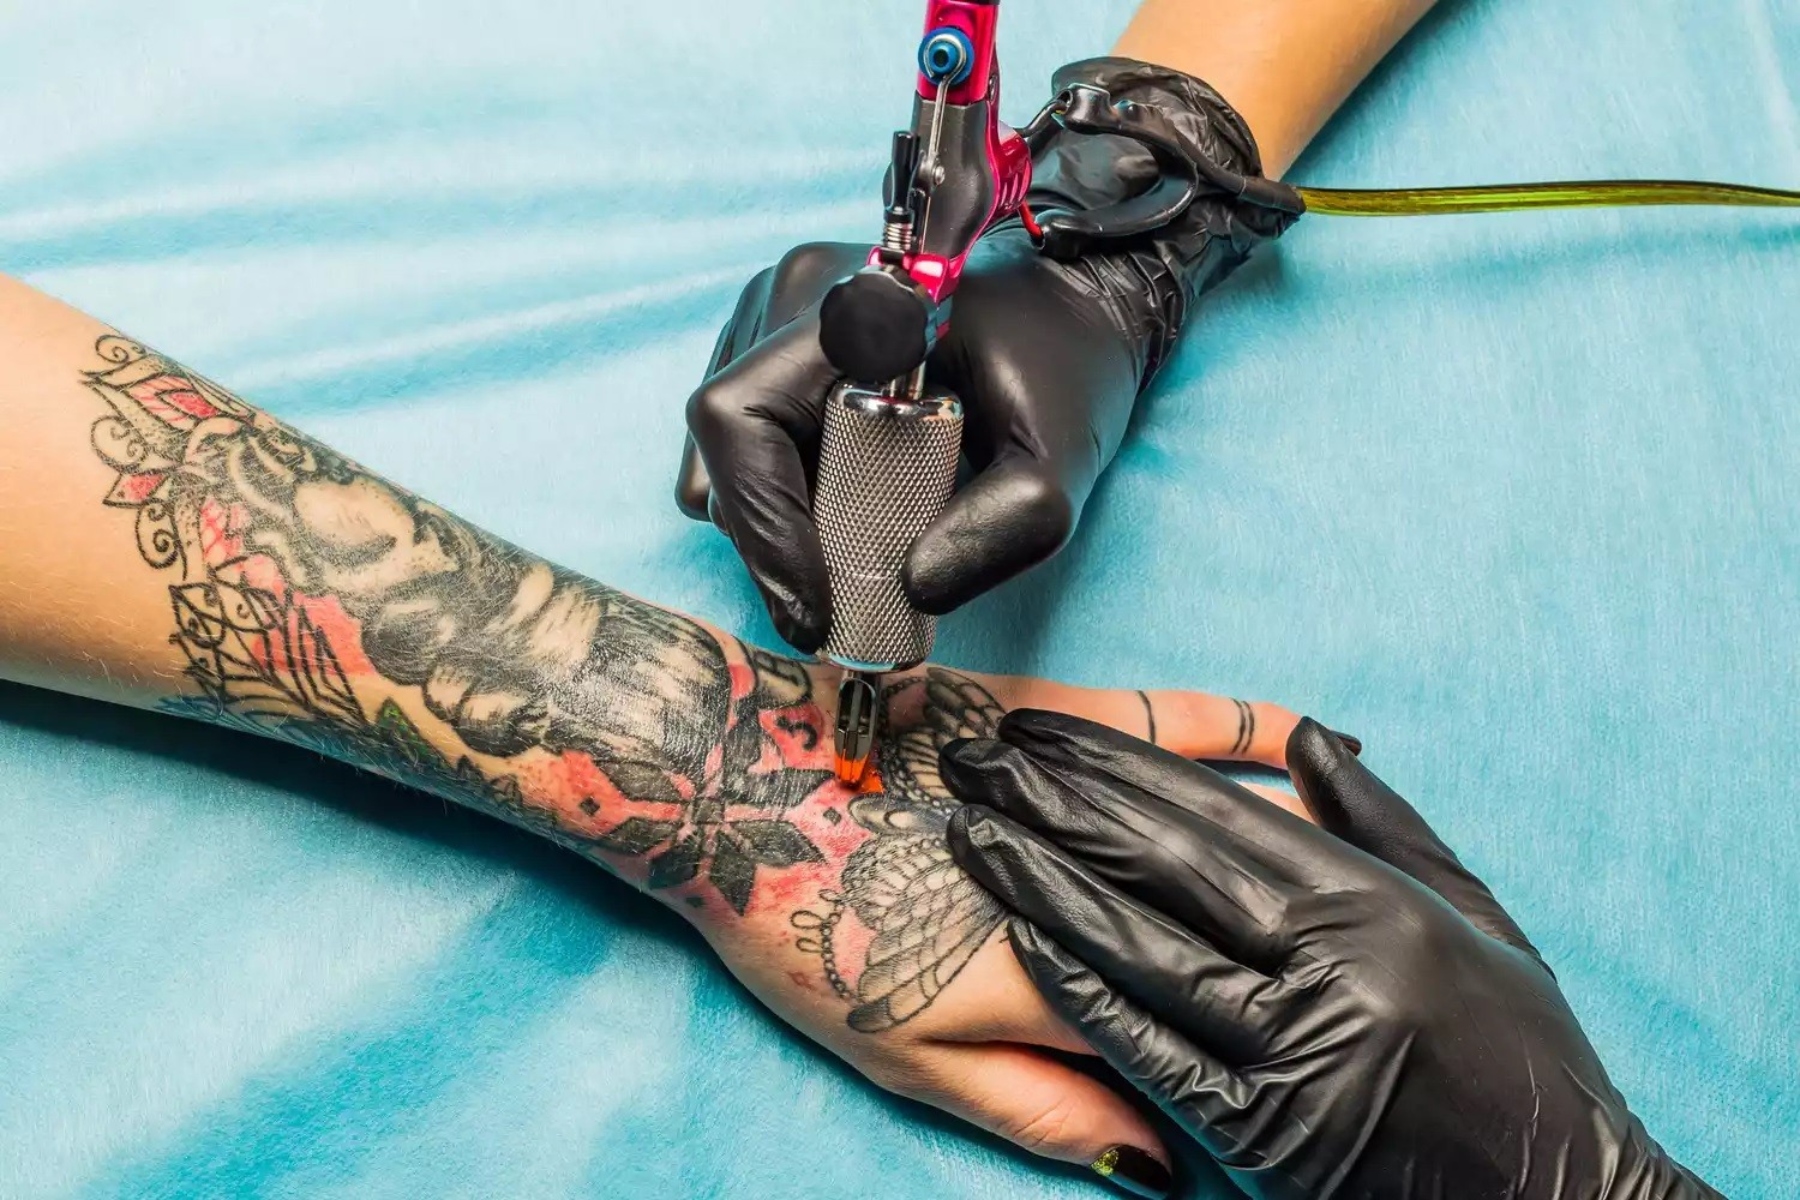 Τατουάζ παρενέργειες: Έρευνα αποκαλύπτει την ναυτία και τις κράμπες ως παρενεργειών όσων κάνουν τατουάζ